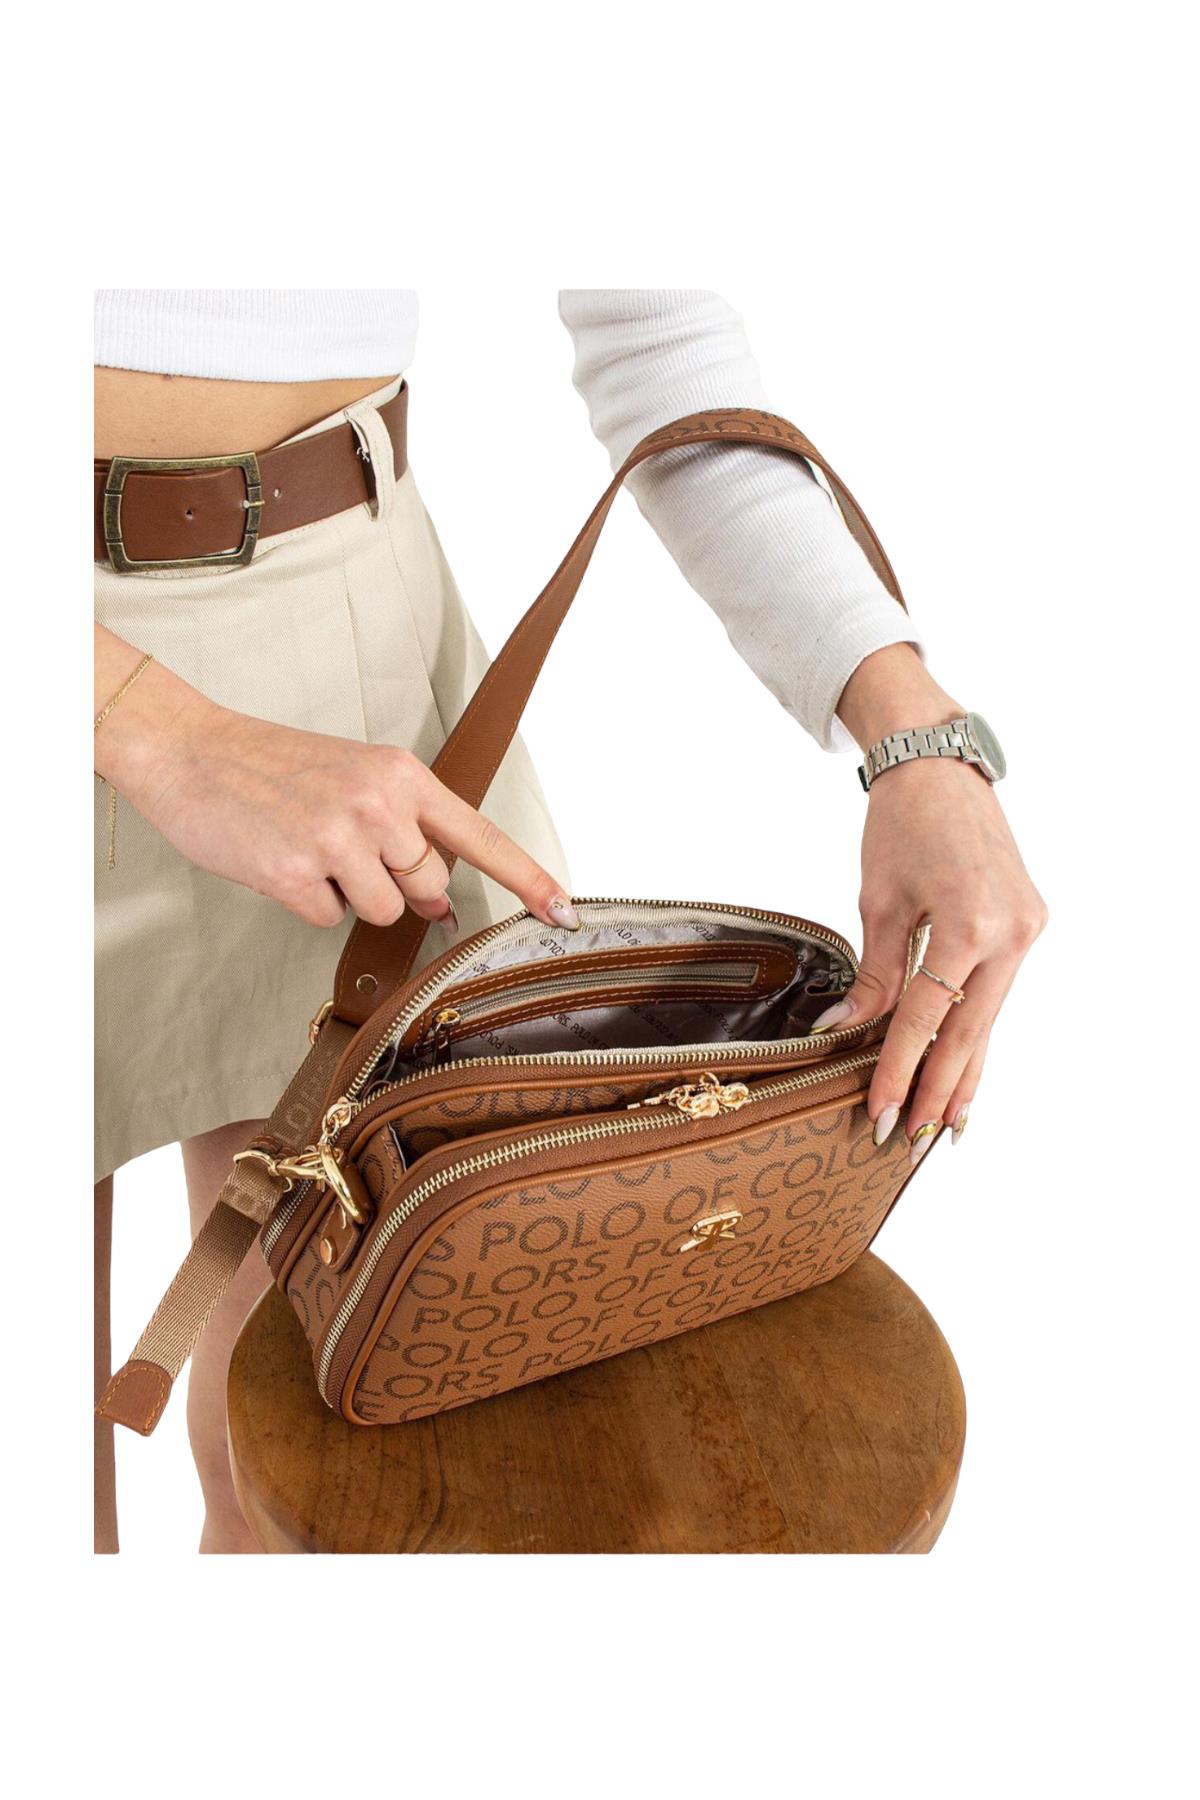 Kadın postacı çanta 25cm17 çok gözlü |elizabell.com.tr